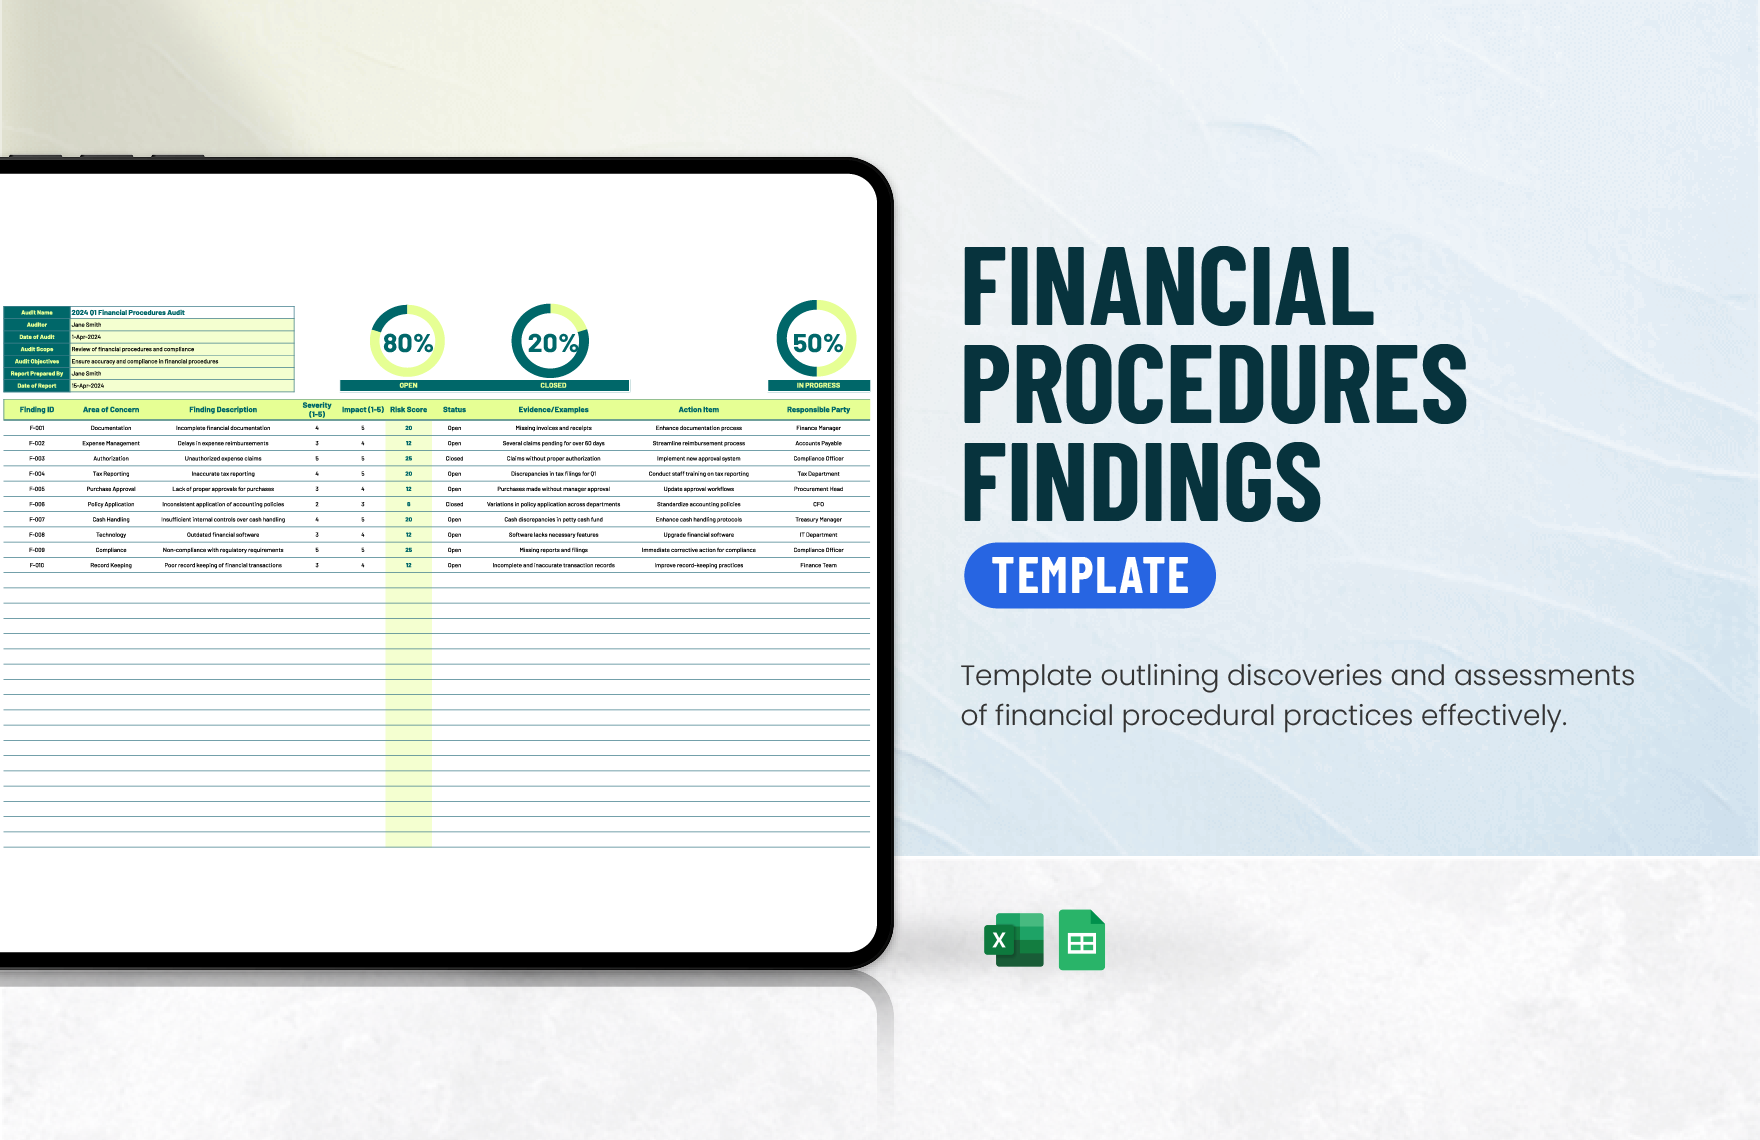 Financial Procedures Findings Template